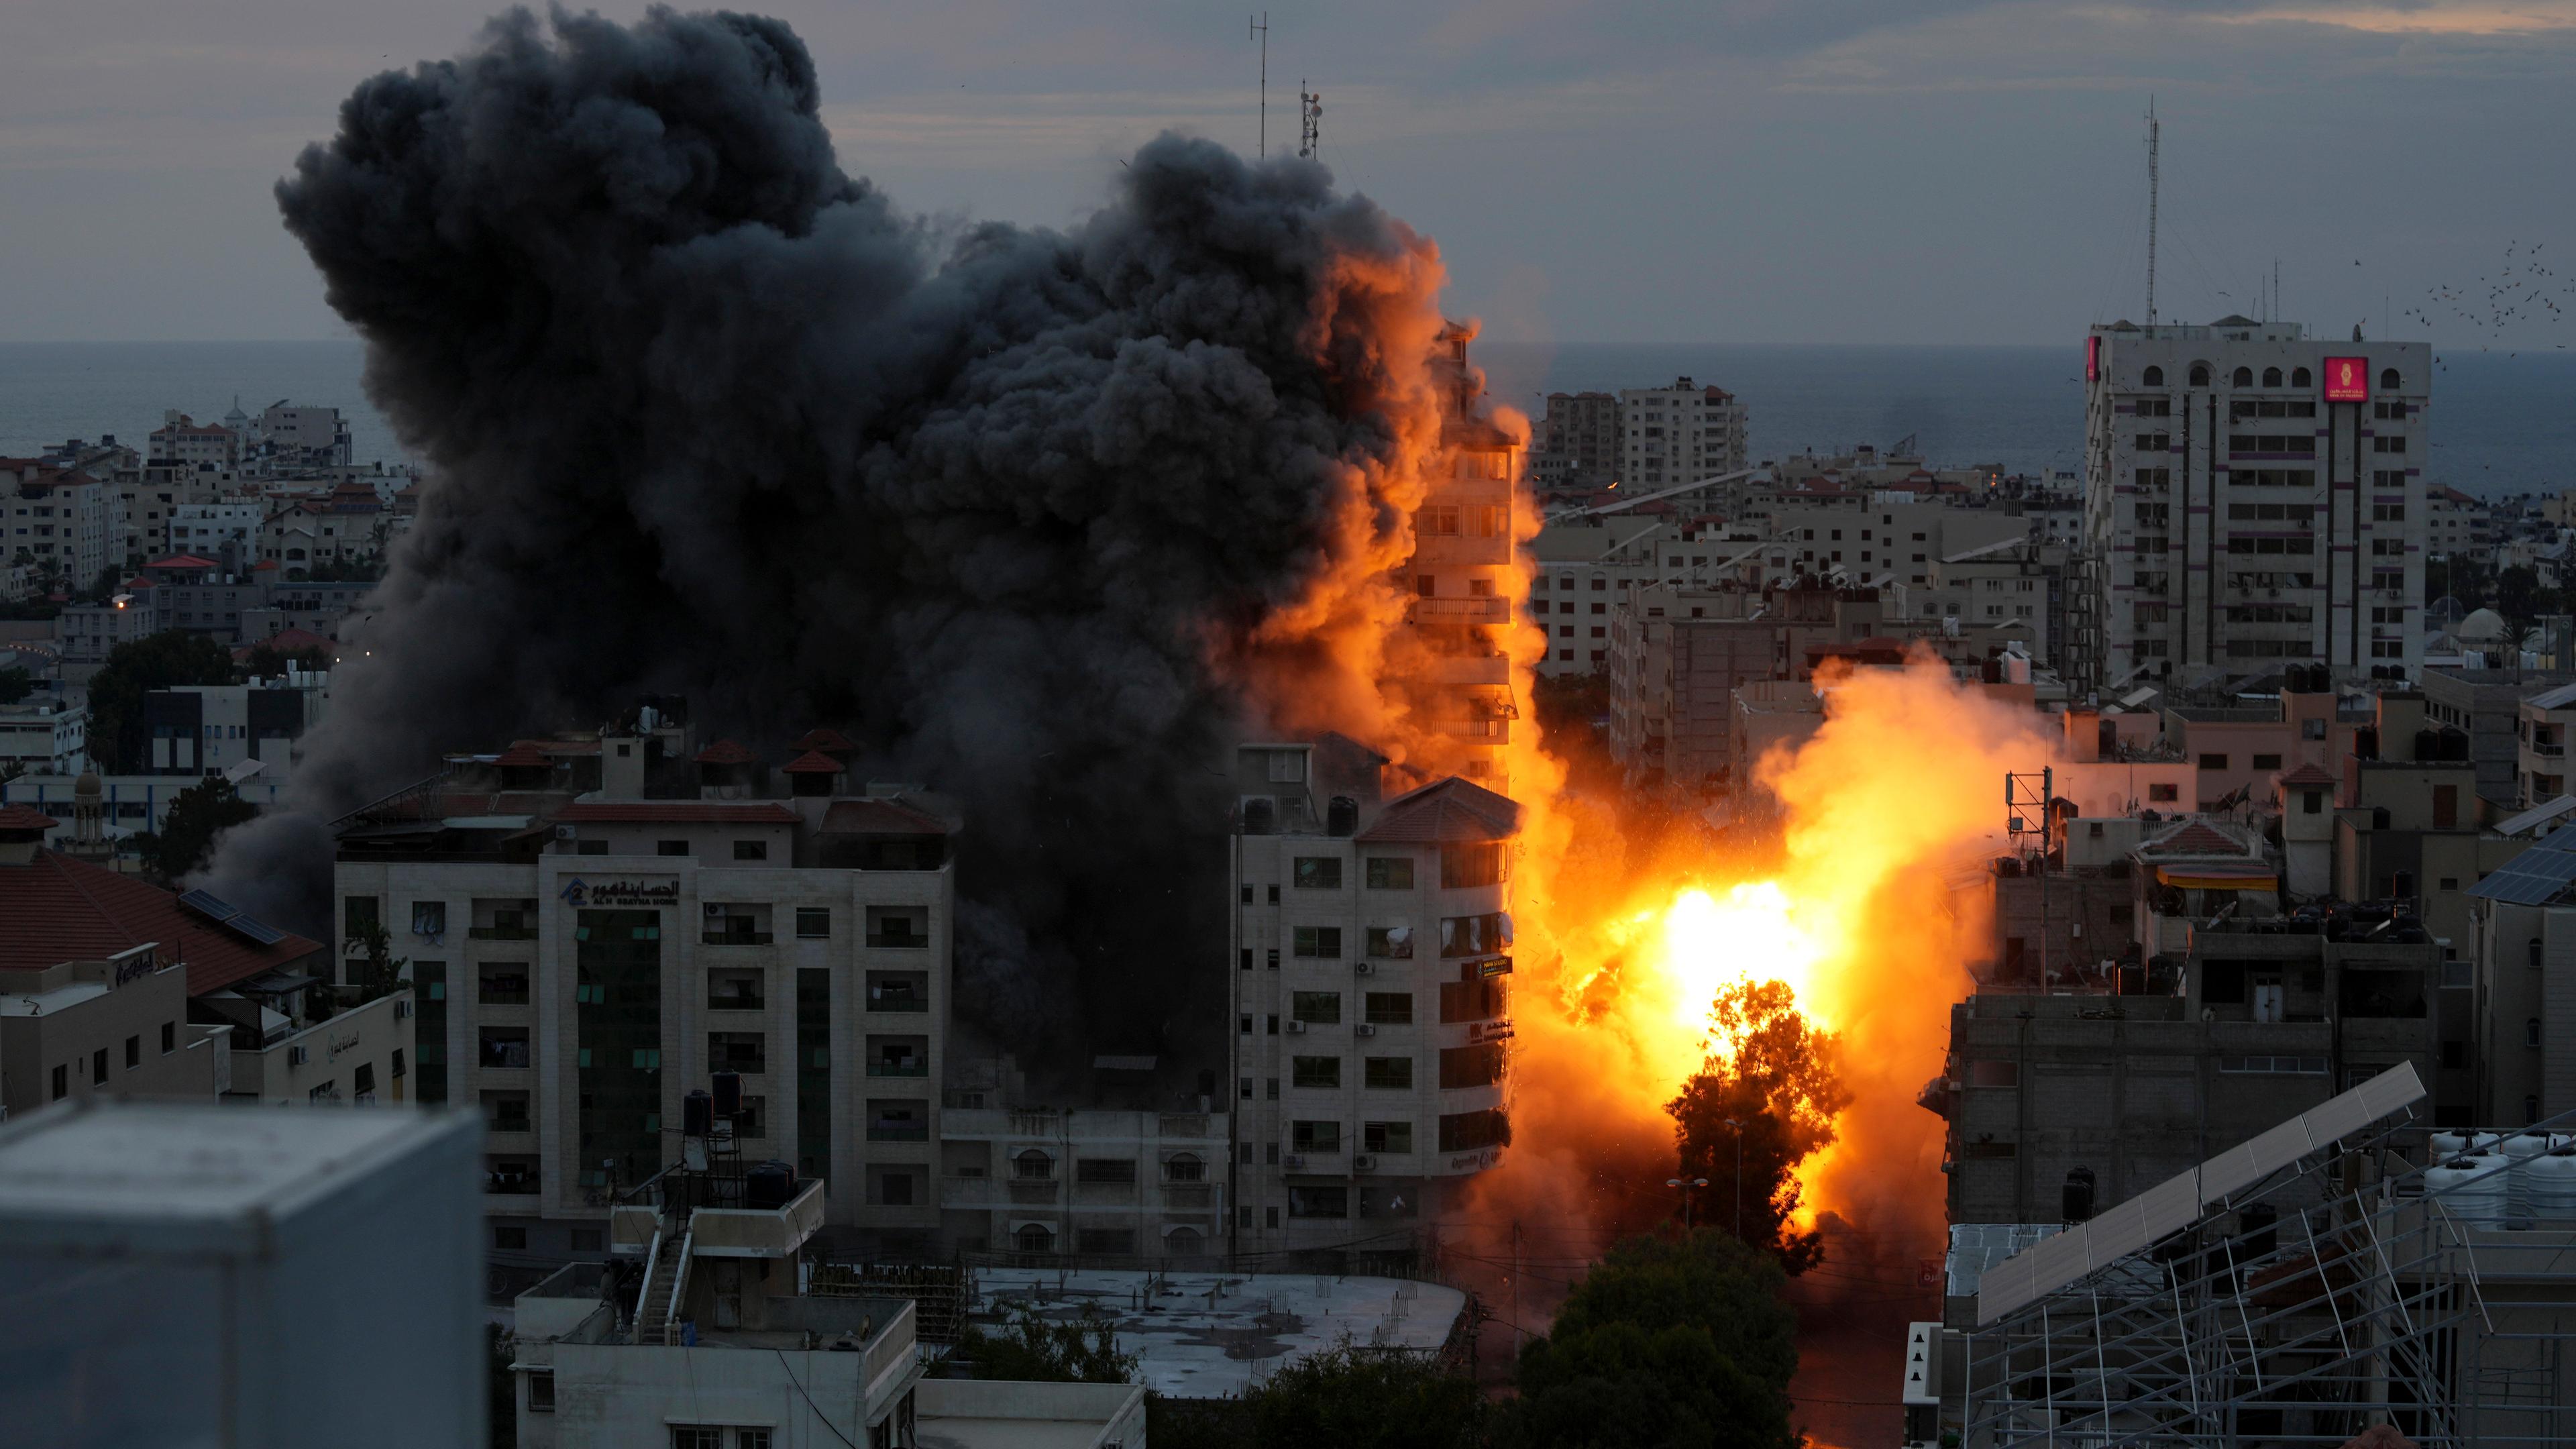  Palästinensische Gebiete, Gaza: Nach einem israelischen Luftangriff auf ein palästinensisches Wohngebiet steigt Rauch nach der Explosion auf.